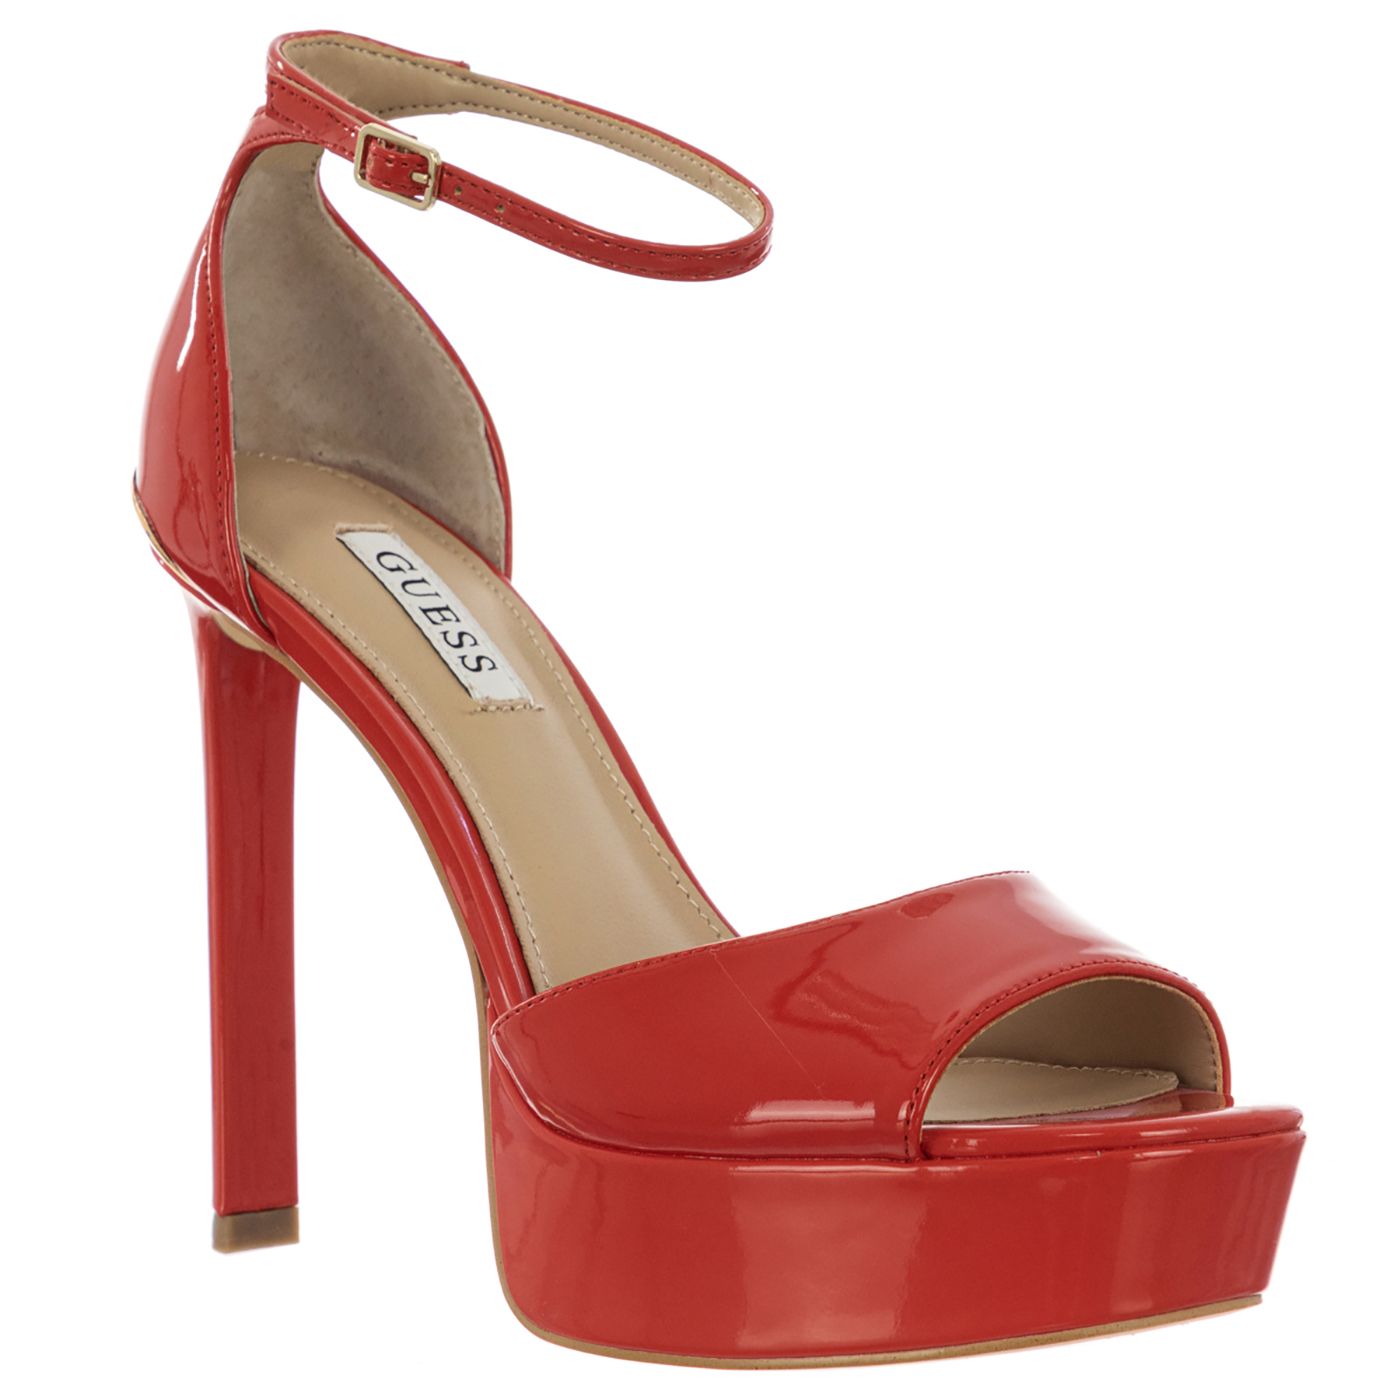 Guess FL5ADNPAF07-RED-40 Vrouwelijk en elegant, deze rode schoenen zullen perfect zijn voor een avondje uit.